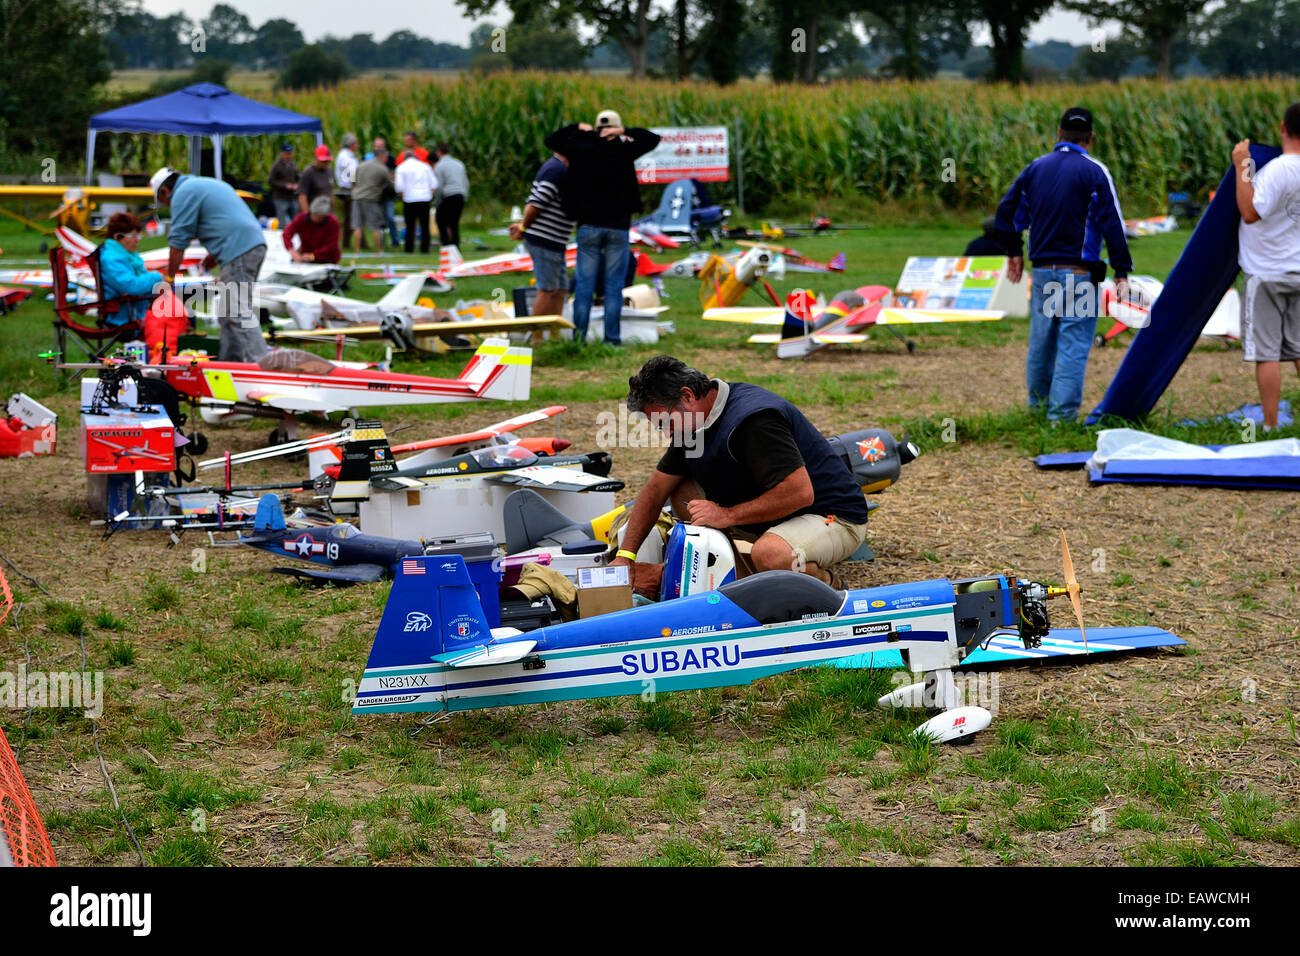 Reunión de aeronaves modelos de Aron (Mayenne, País del Loira, Francia). Foto de stock